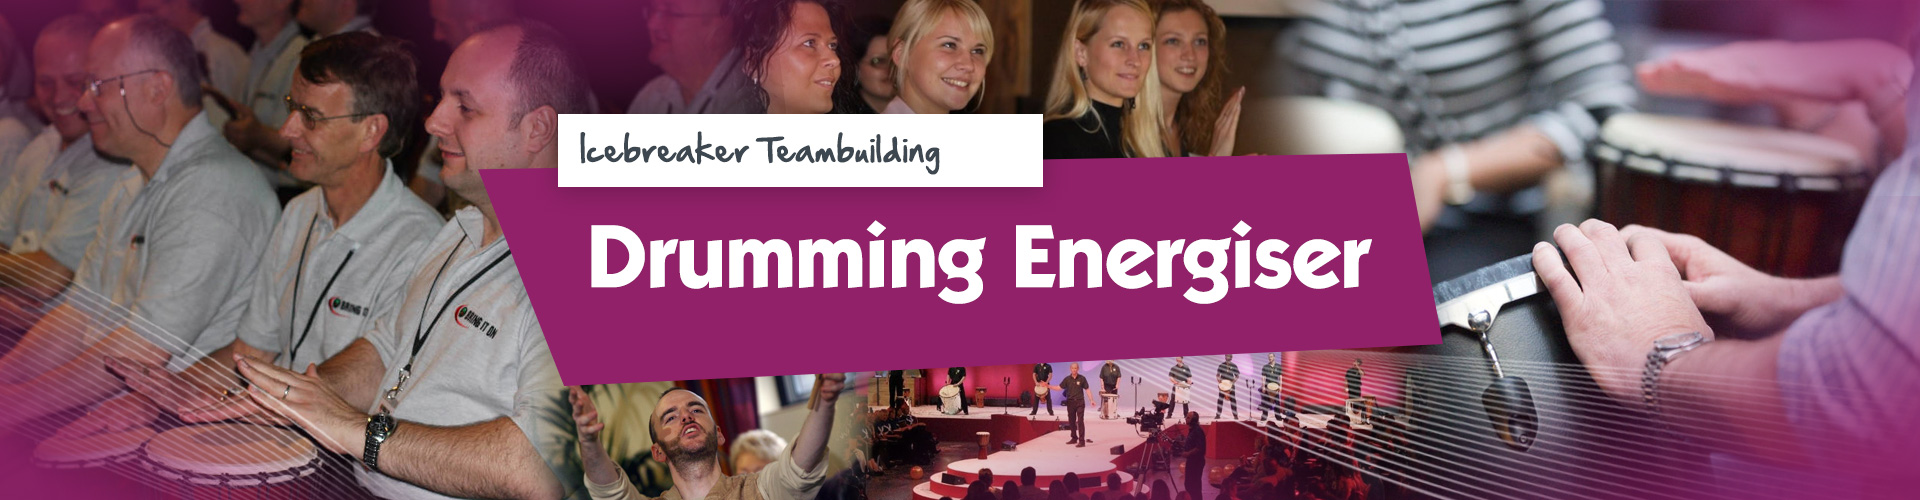 Teambuilding | Drumming Energiser